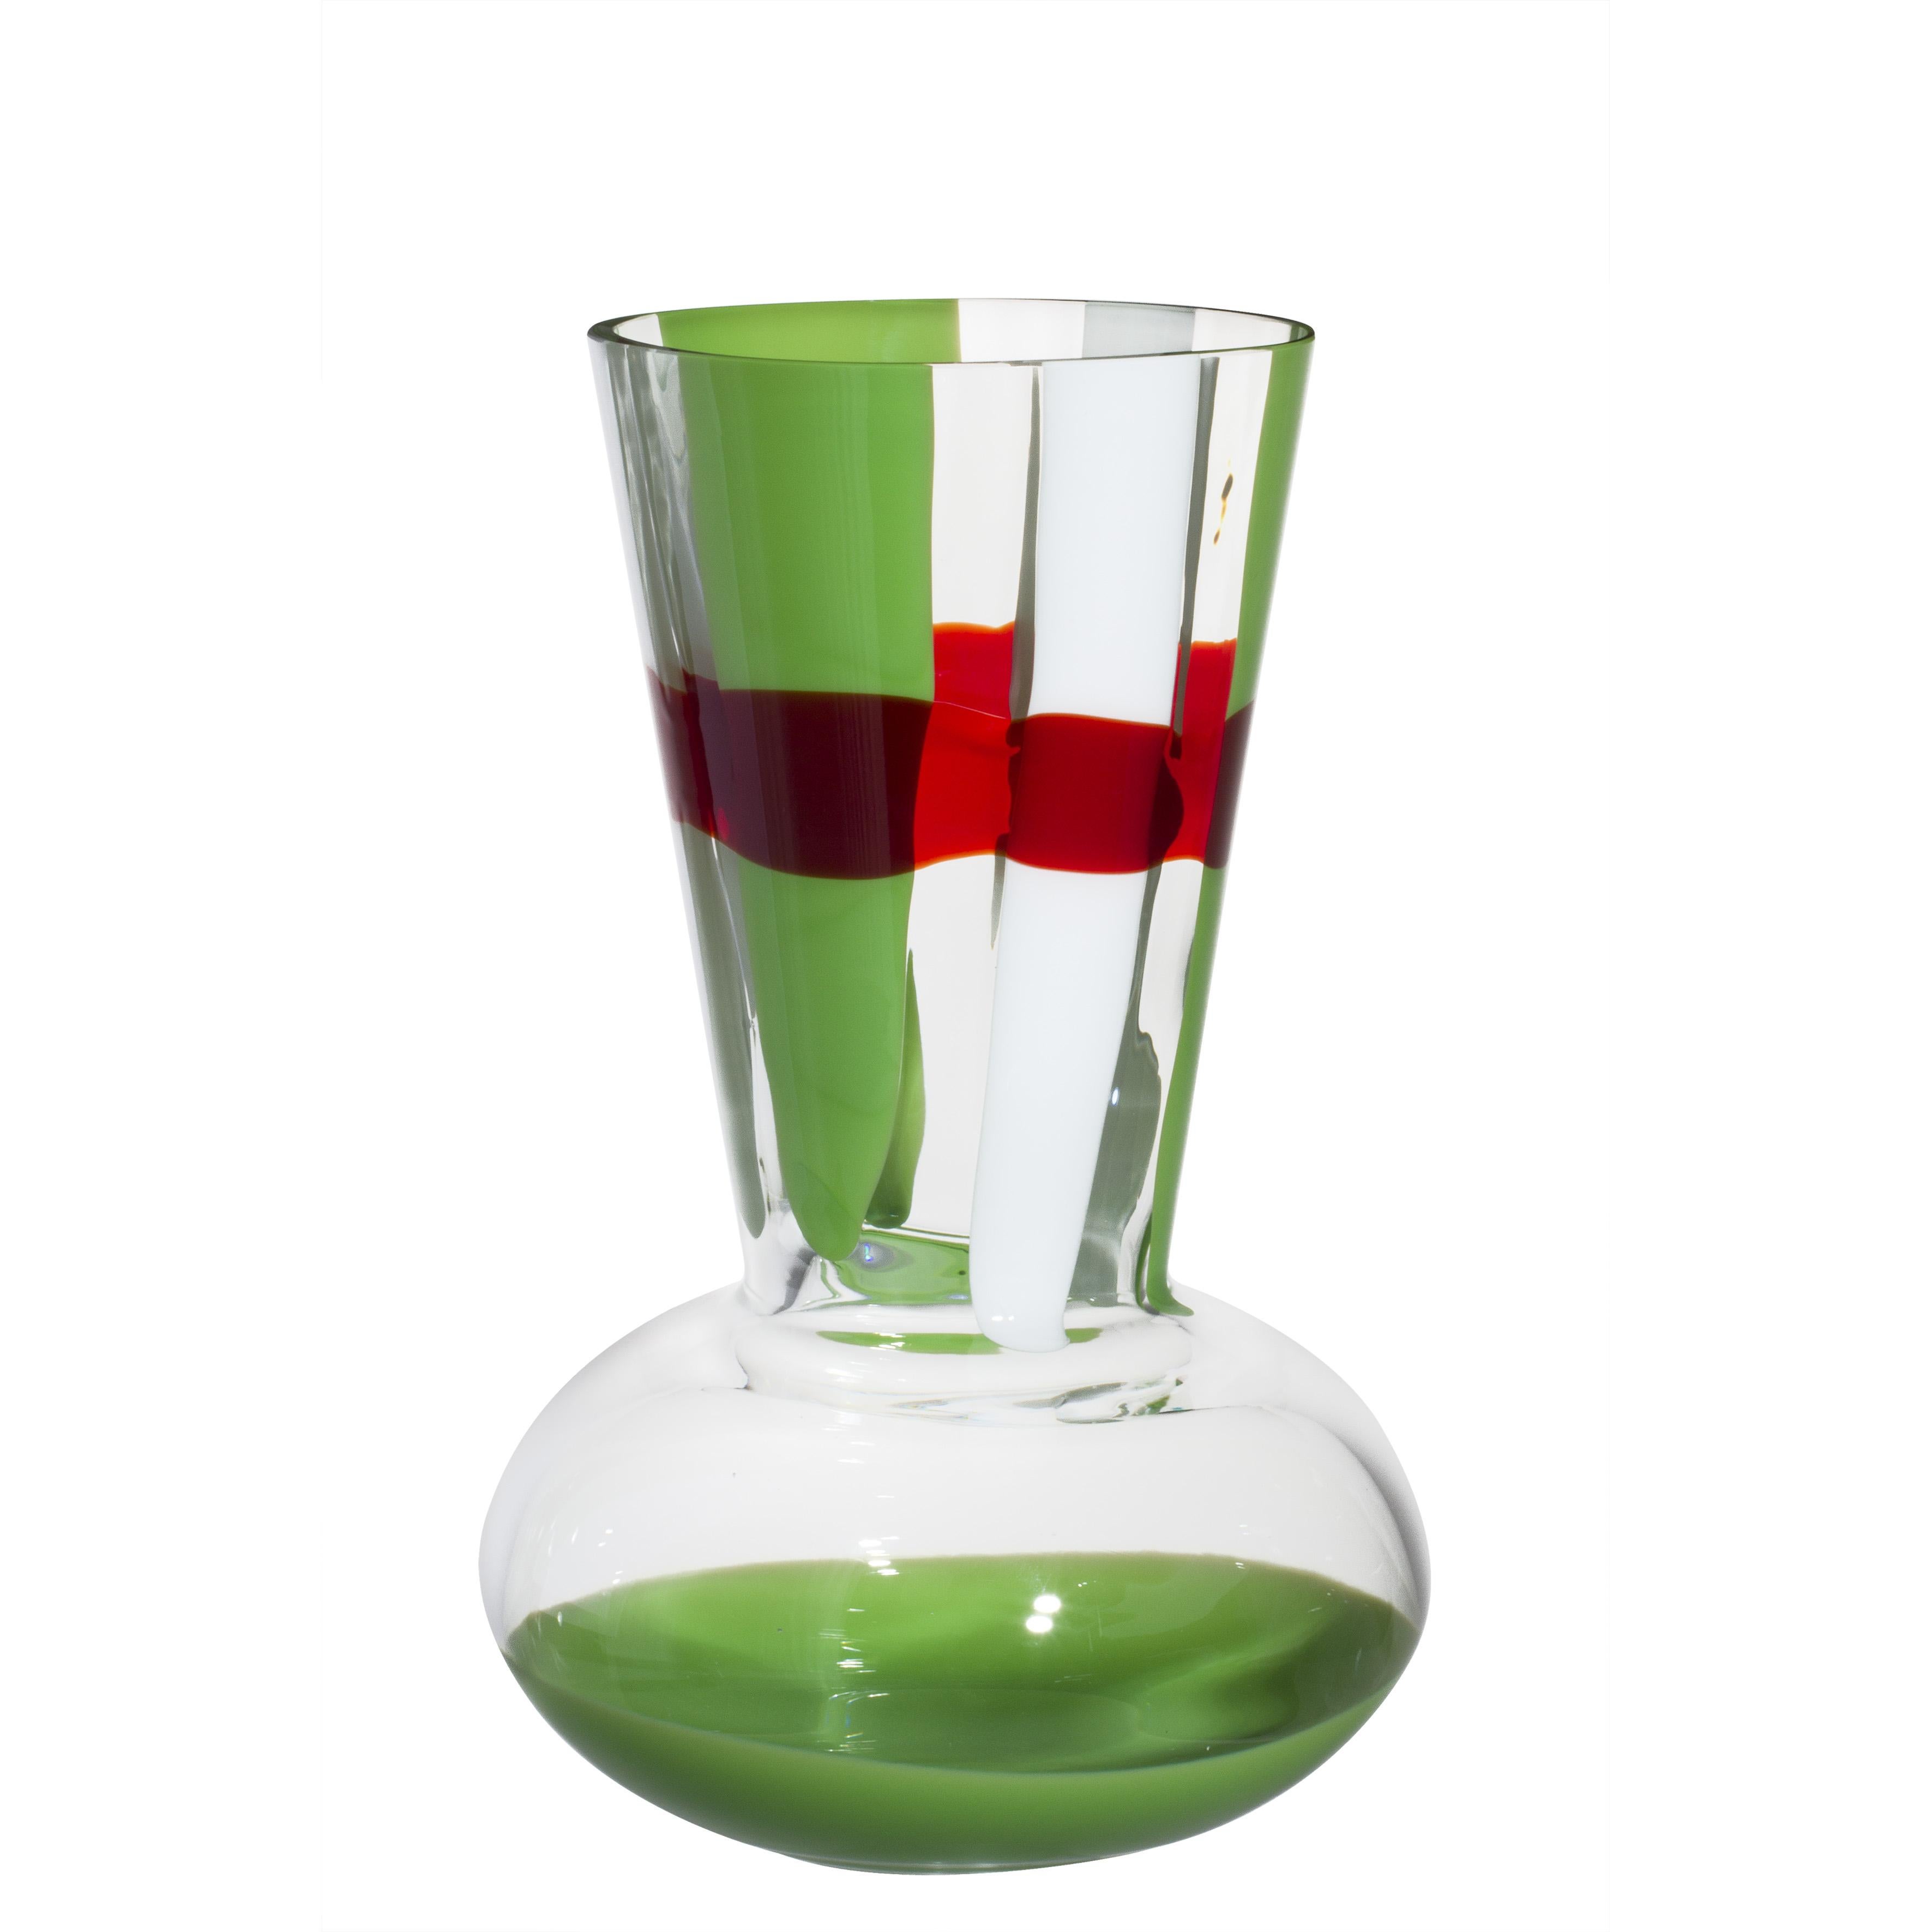 Troncosfera-Vase in Rot, Grün und Weiß von Carlo Moretti